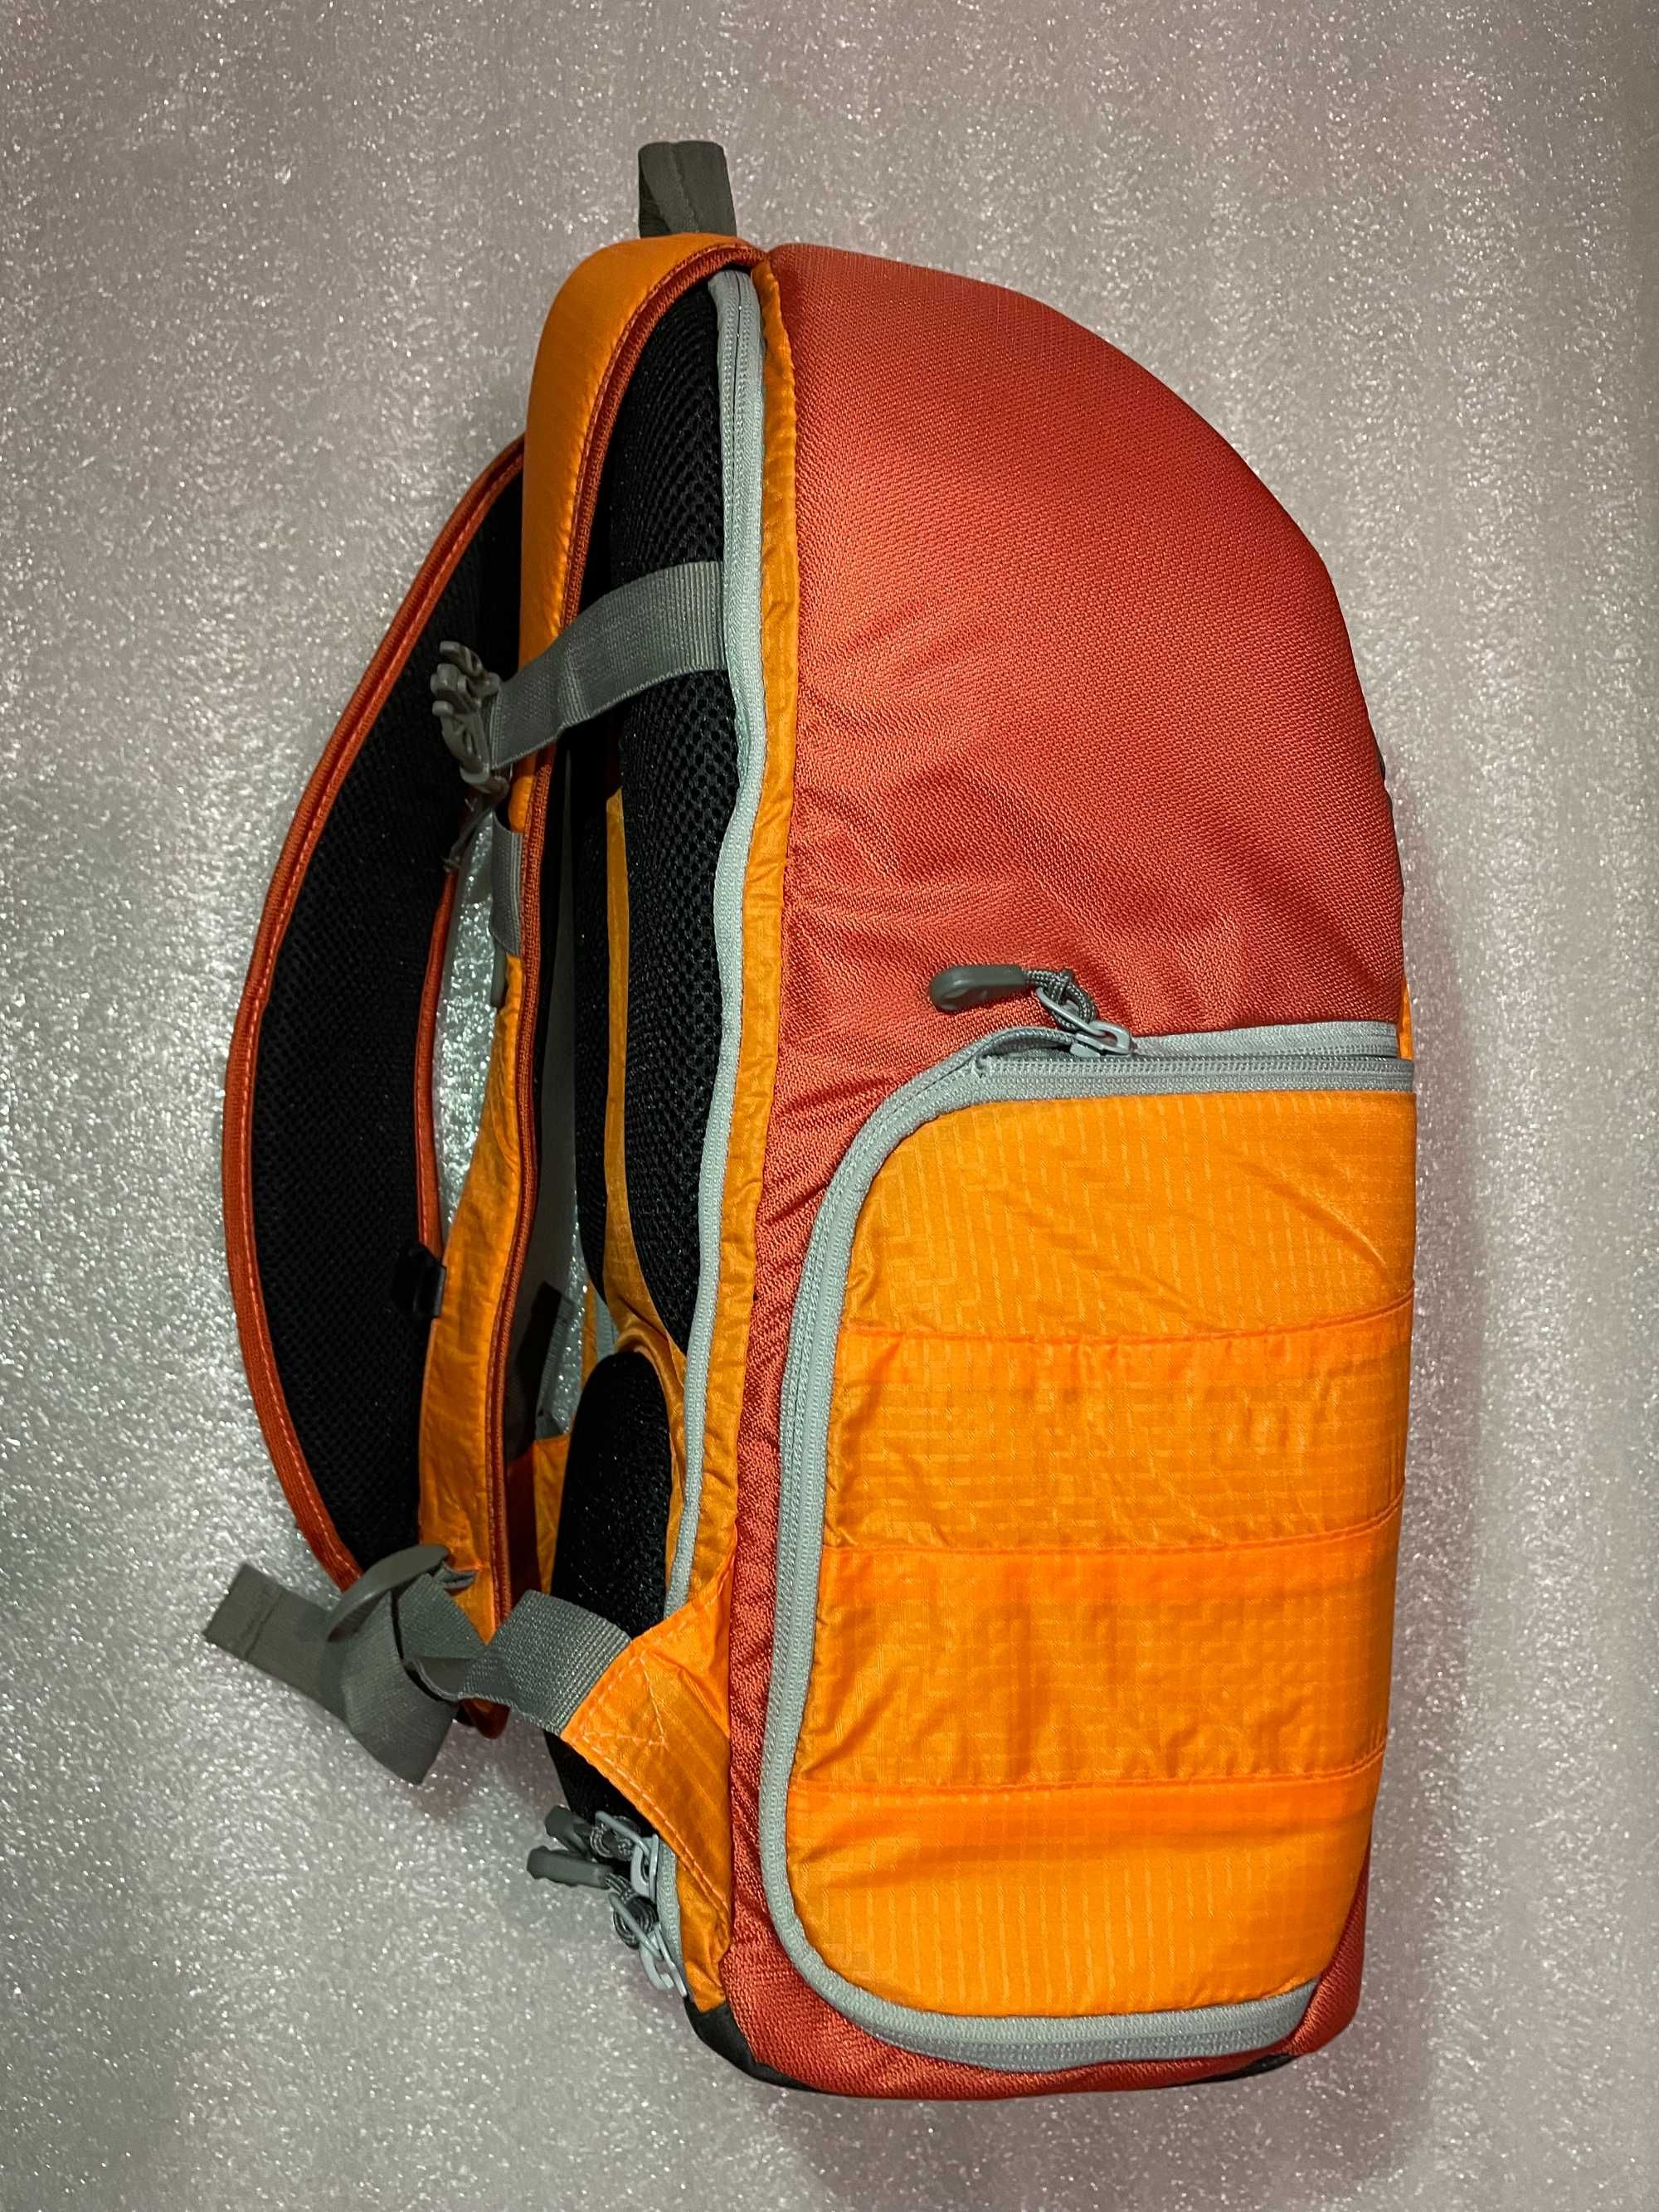 AmazonBasics plecak np. na aparat, seria Trekker - pomarańczowy